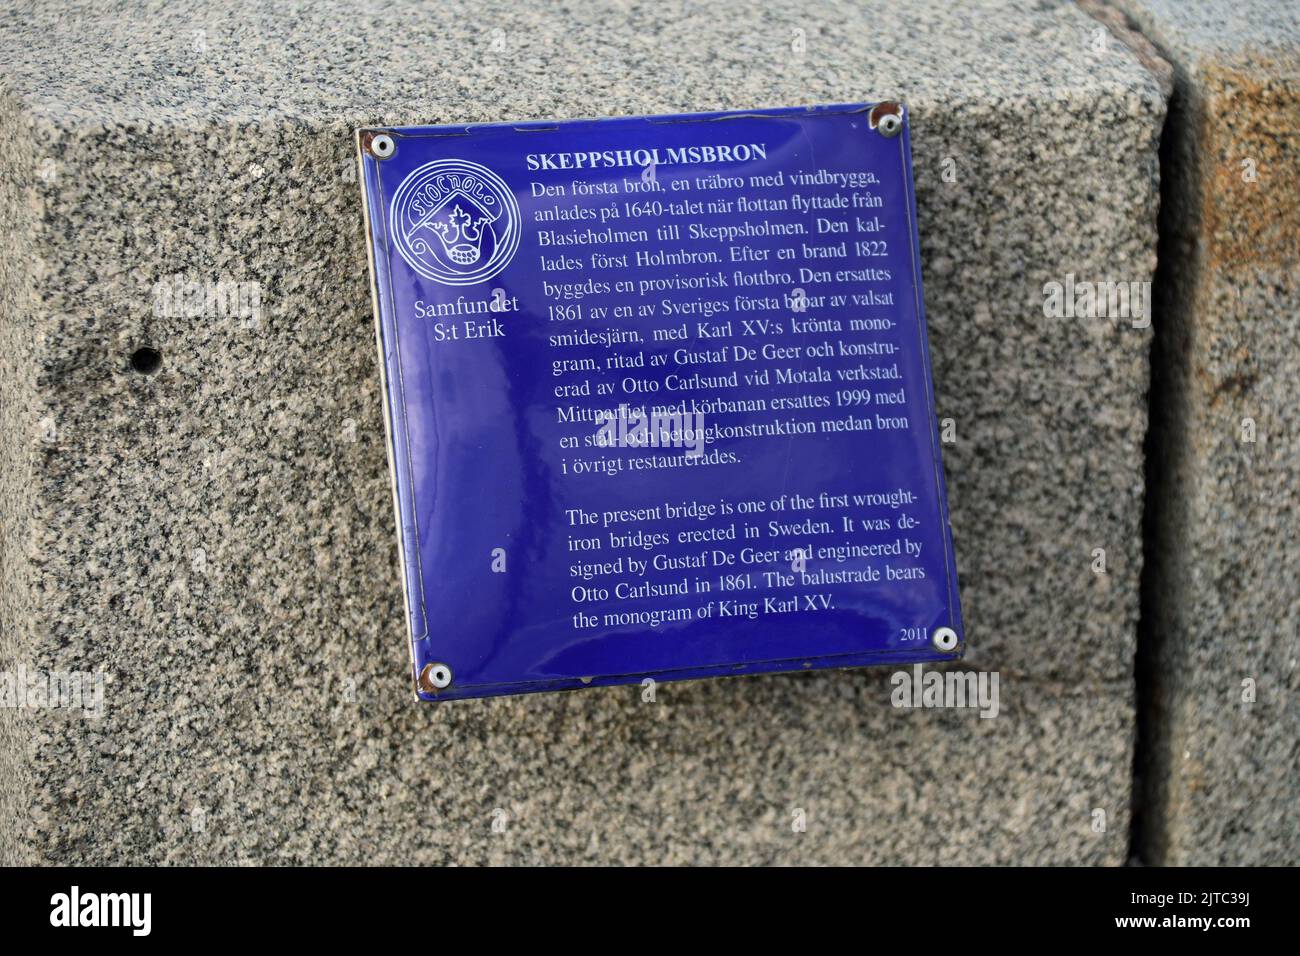 Information plaque on Skeppholmsbron in Stockholm Stock Photo